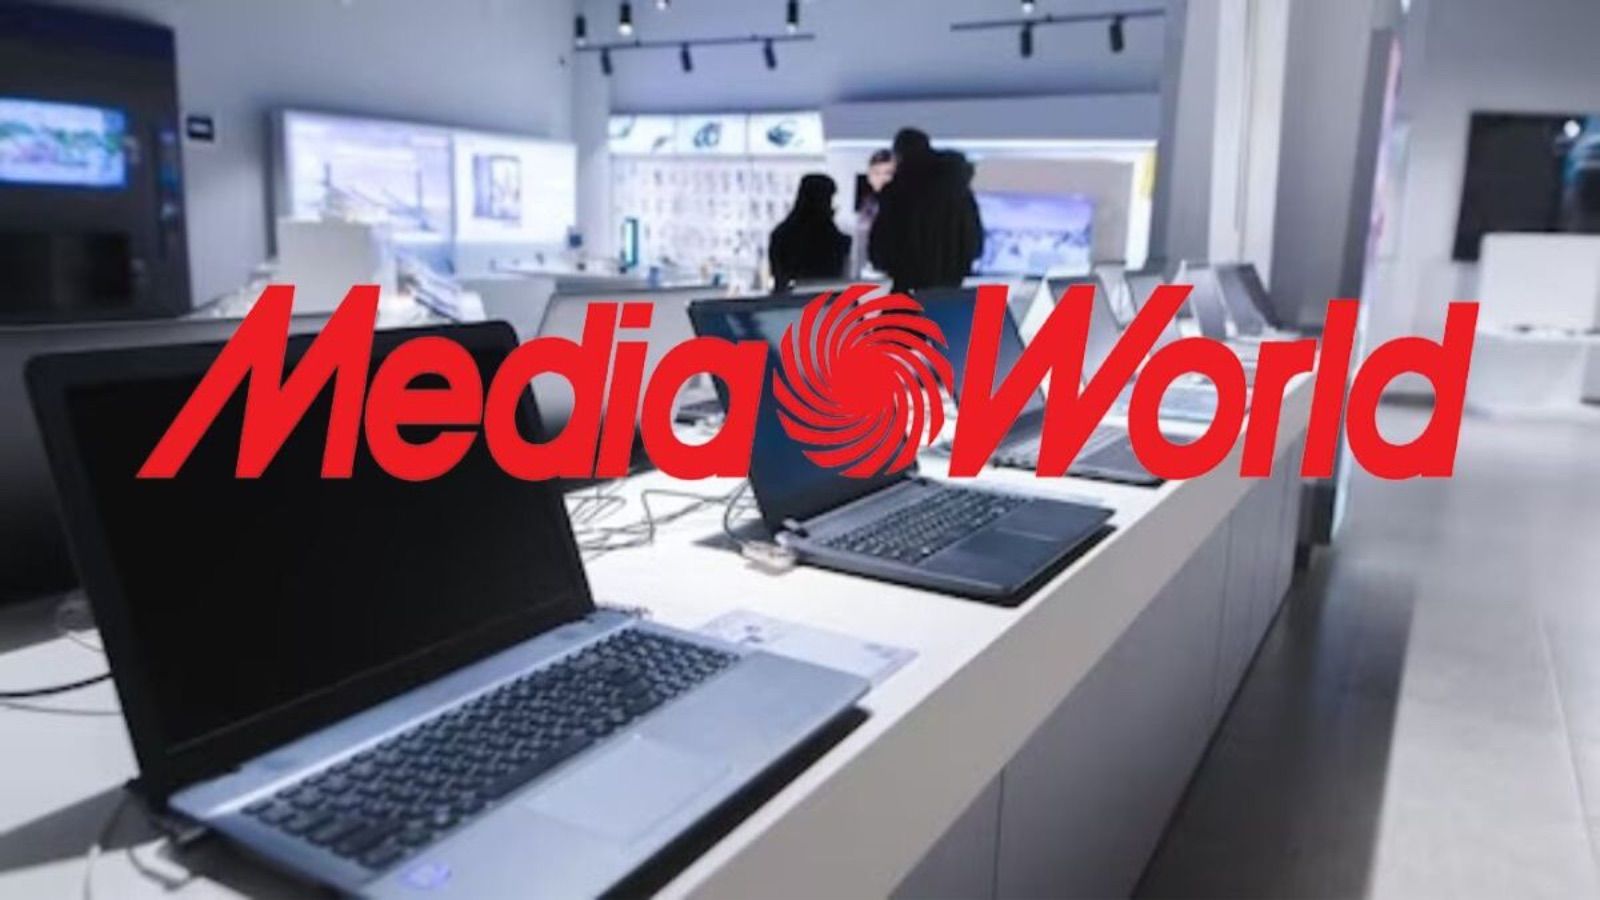 MediaWorld batte Euronics ed Expert con prezzi al 50% a settembre